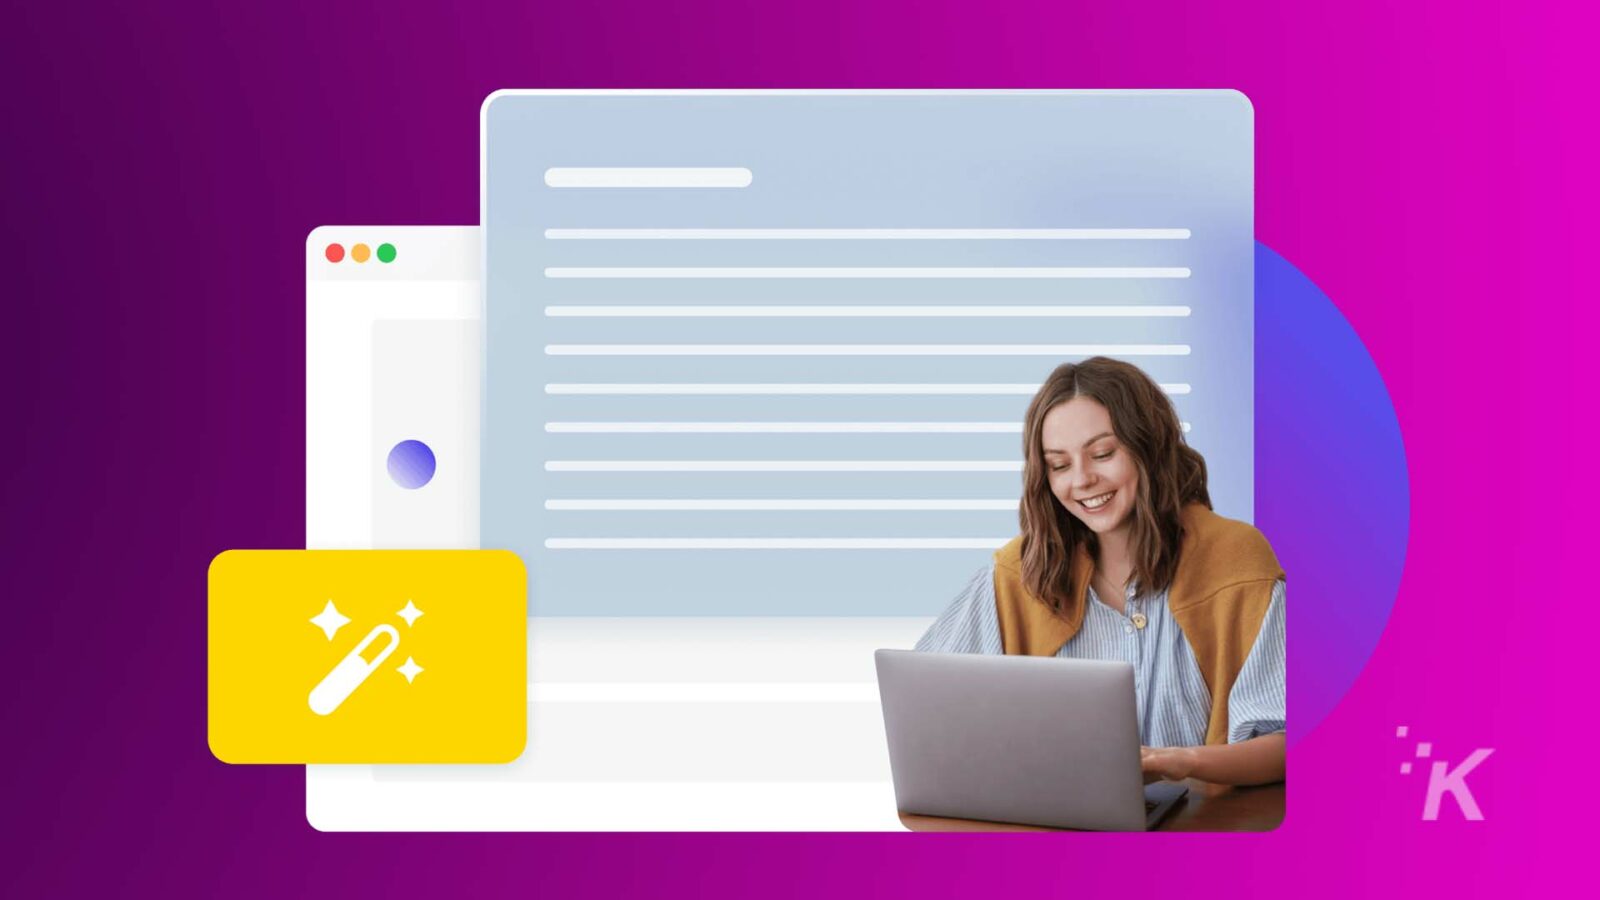 一个人正在对着笔记本电脑微笑，其图形叠加暗示着 Web 开发工具，具有鲜艳的紫色和蓝色背景。